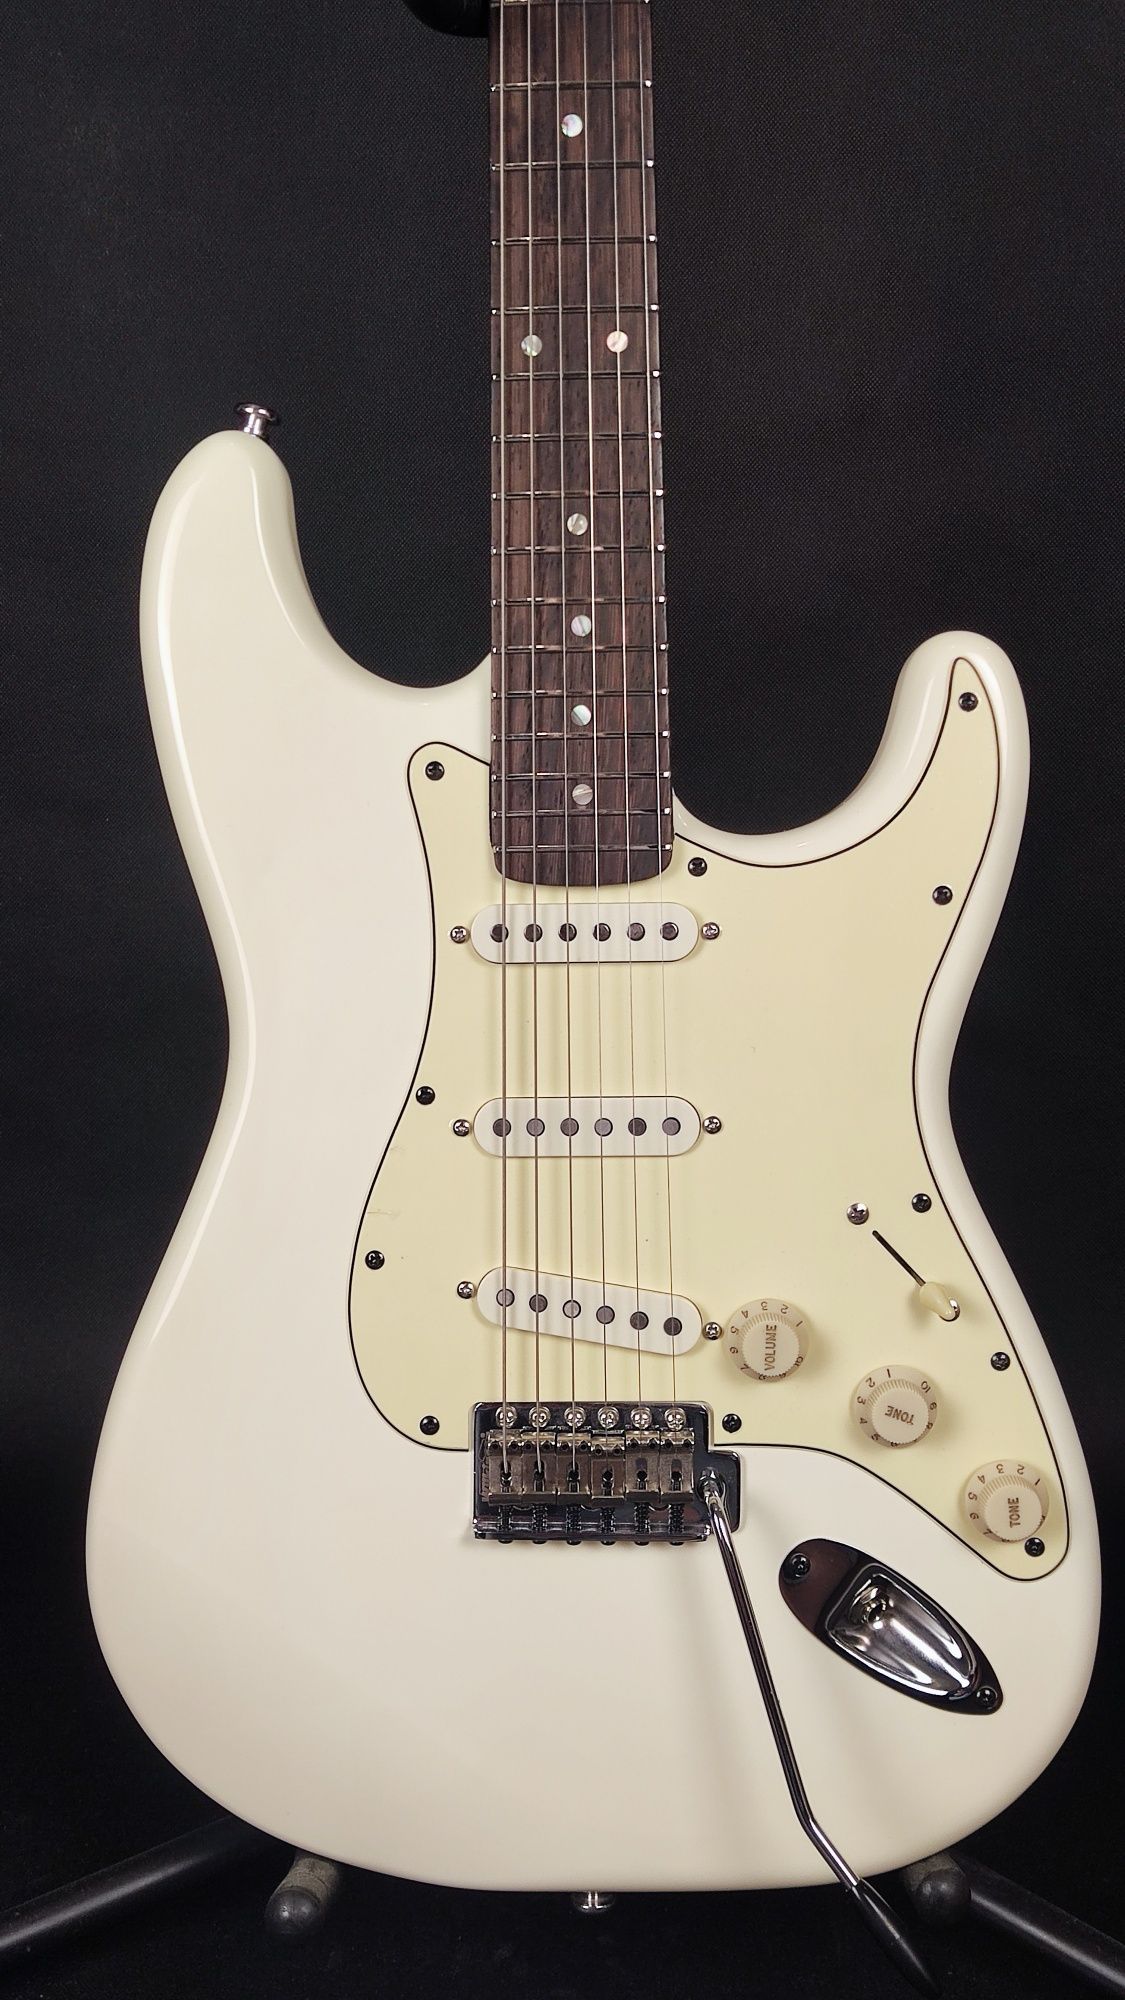 Gitara PZI Flat White Custom stratocaster